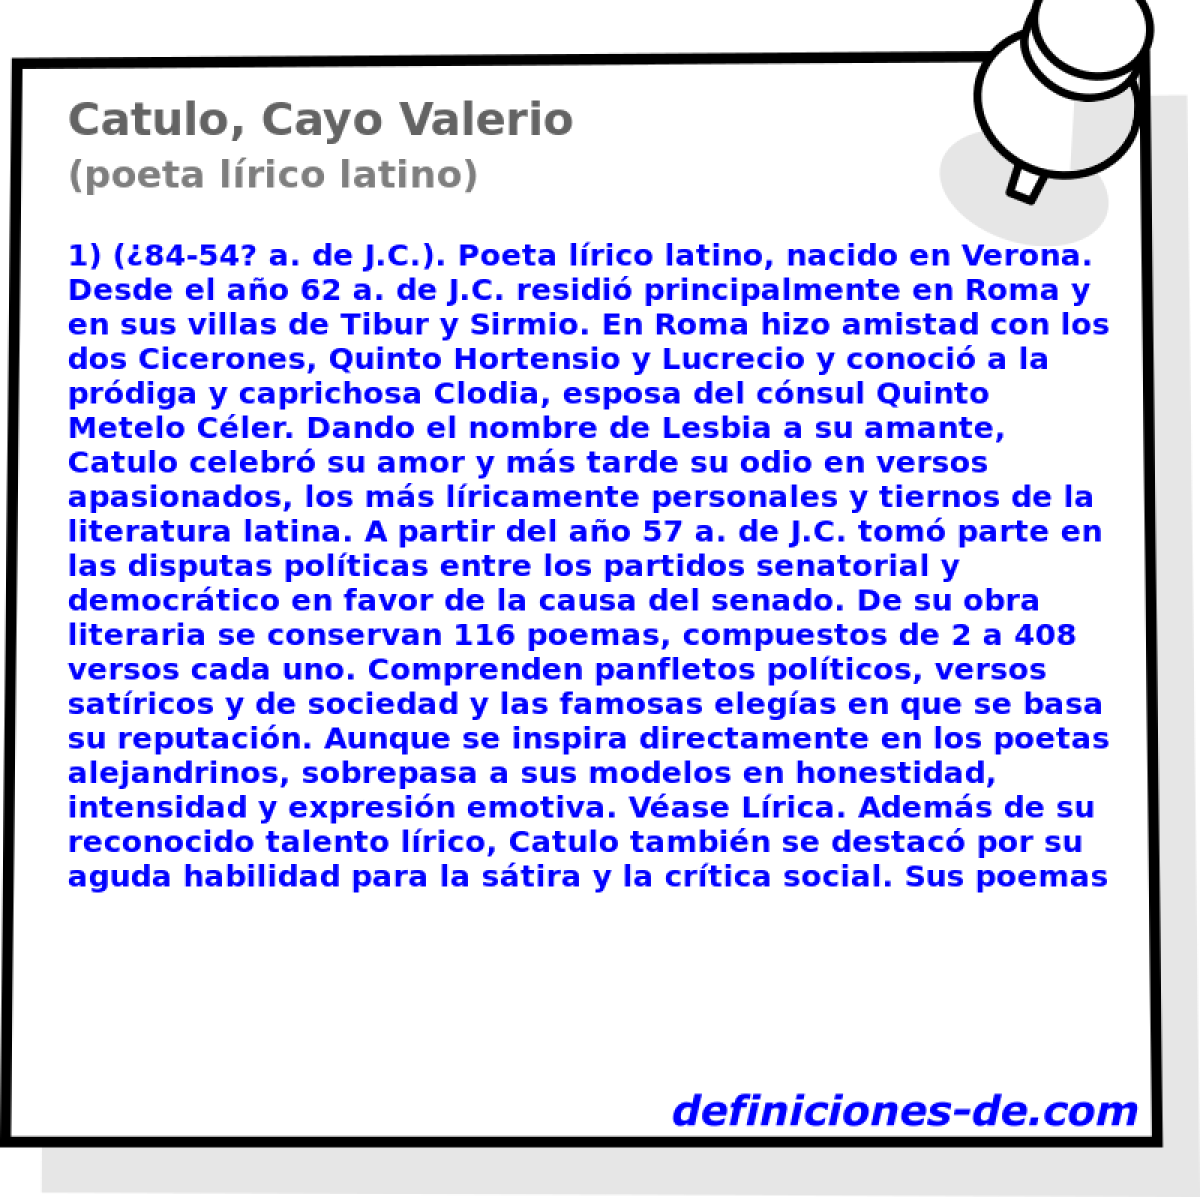 Catulo, Cayo Valerio (poeta lrico latino)